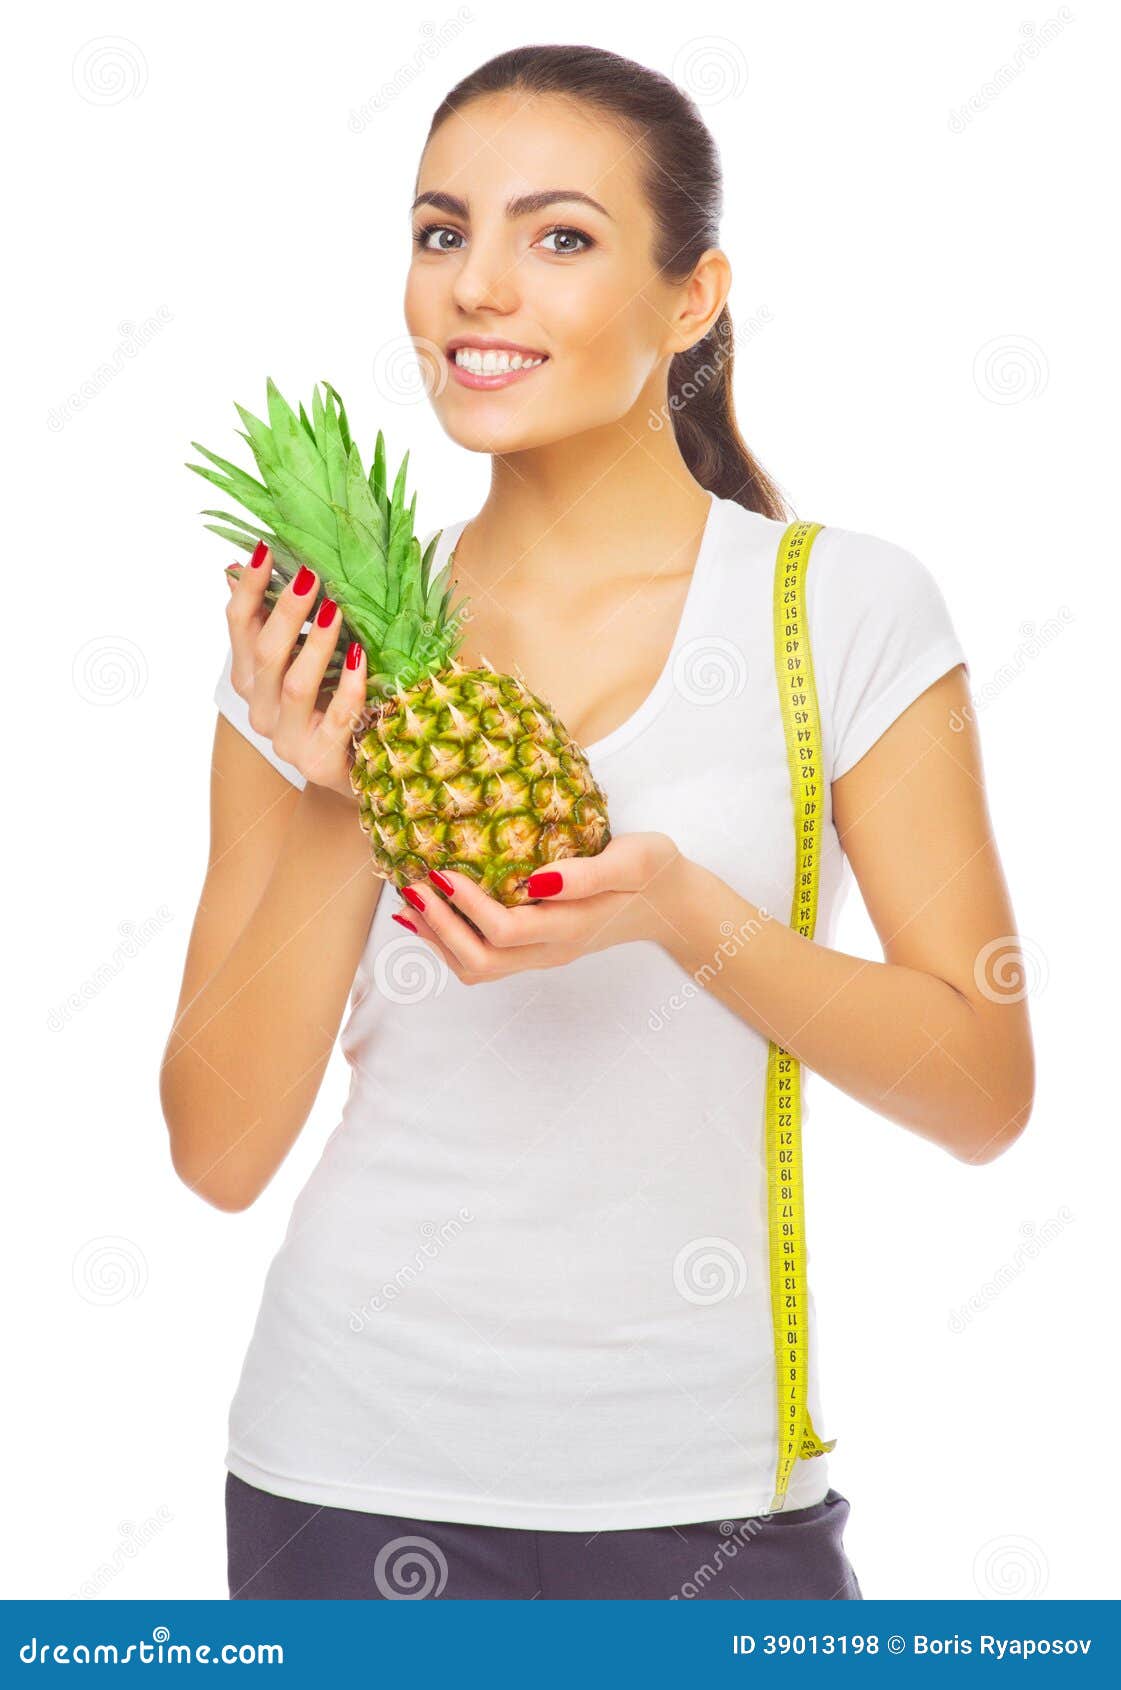 Résultat de recherche d'images pour "santé ananas"